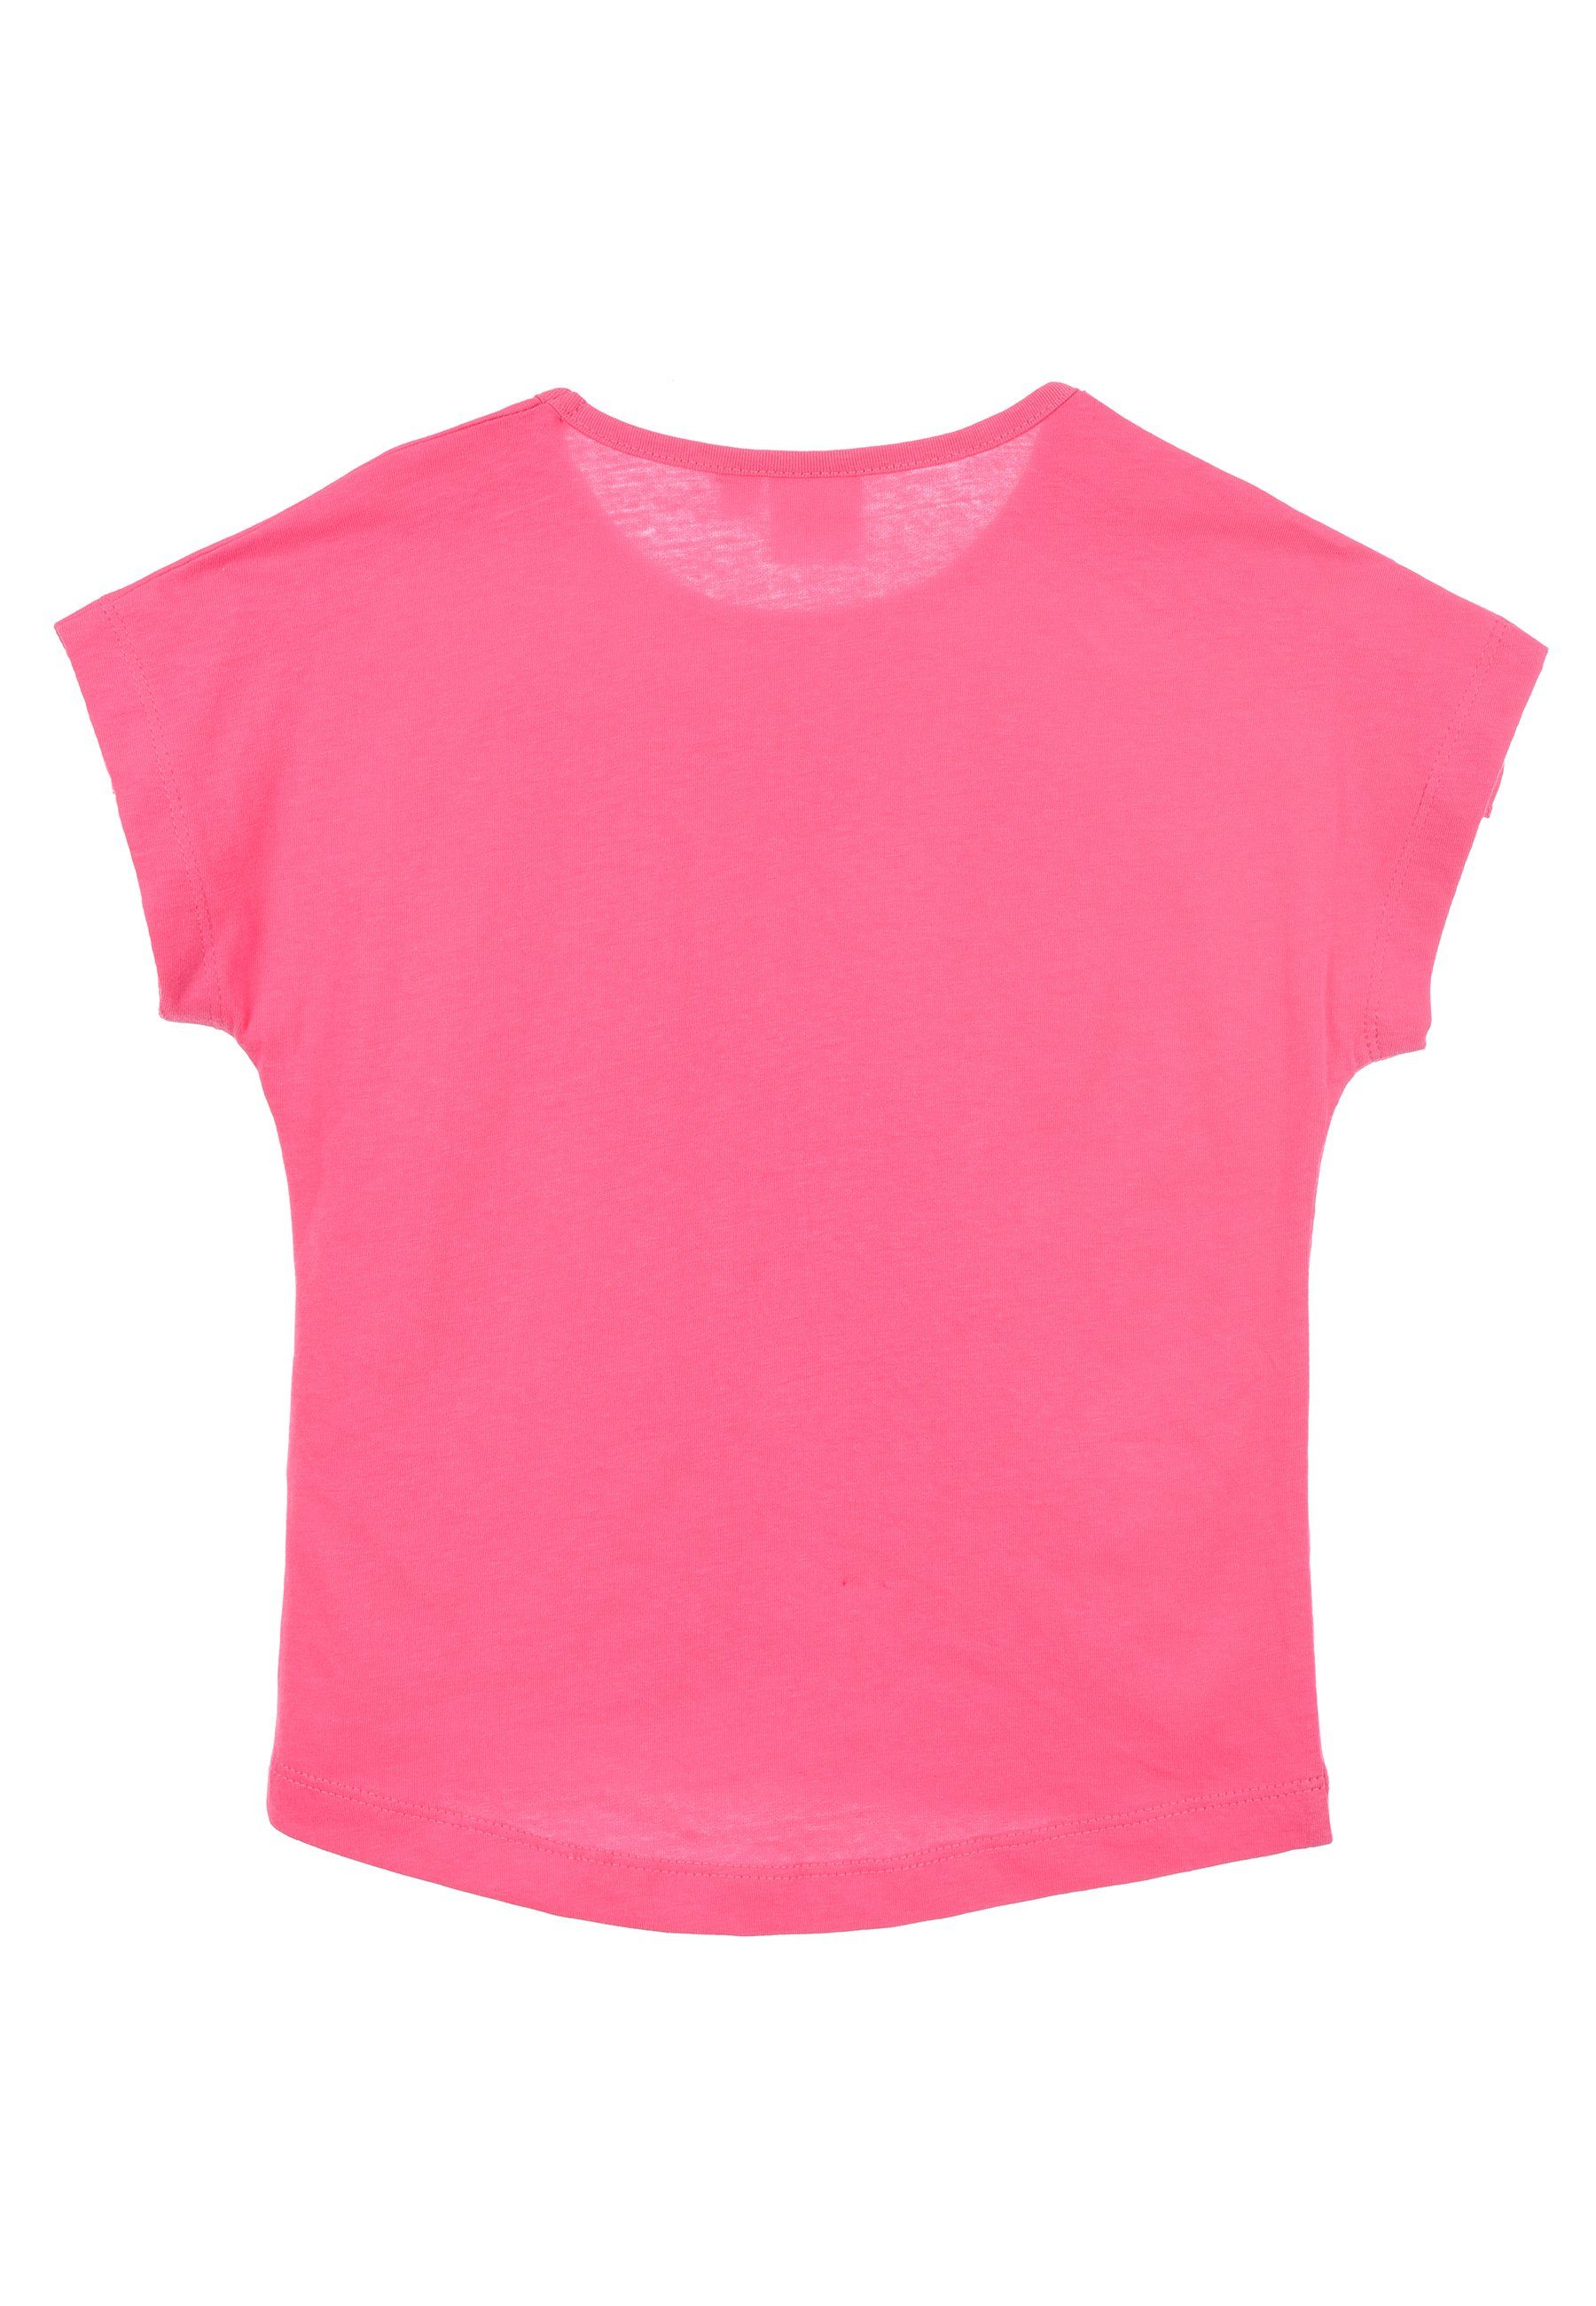 T-Shirt Oberteil Kurzarm-Shirt Peppa Pig Mädchen Pink